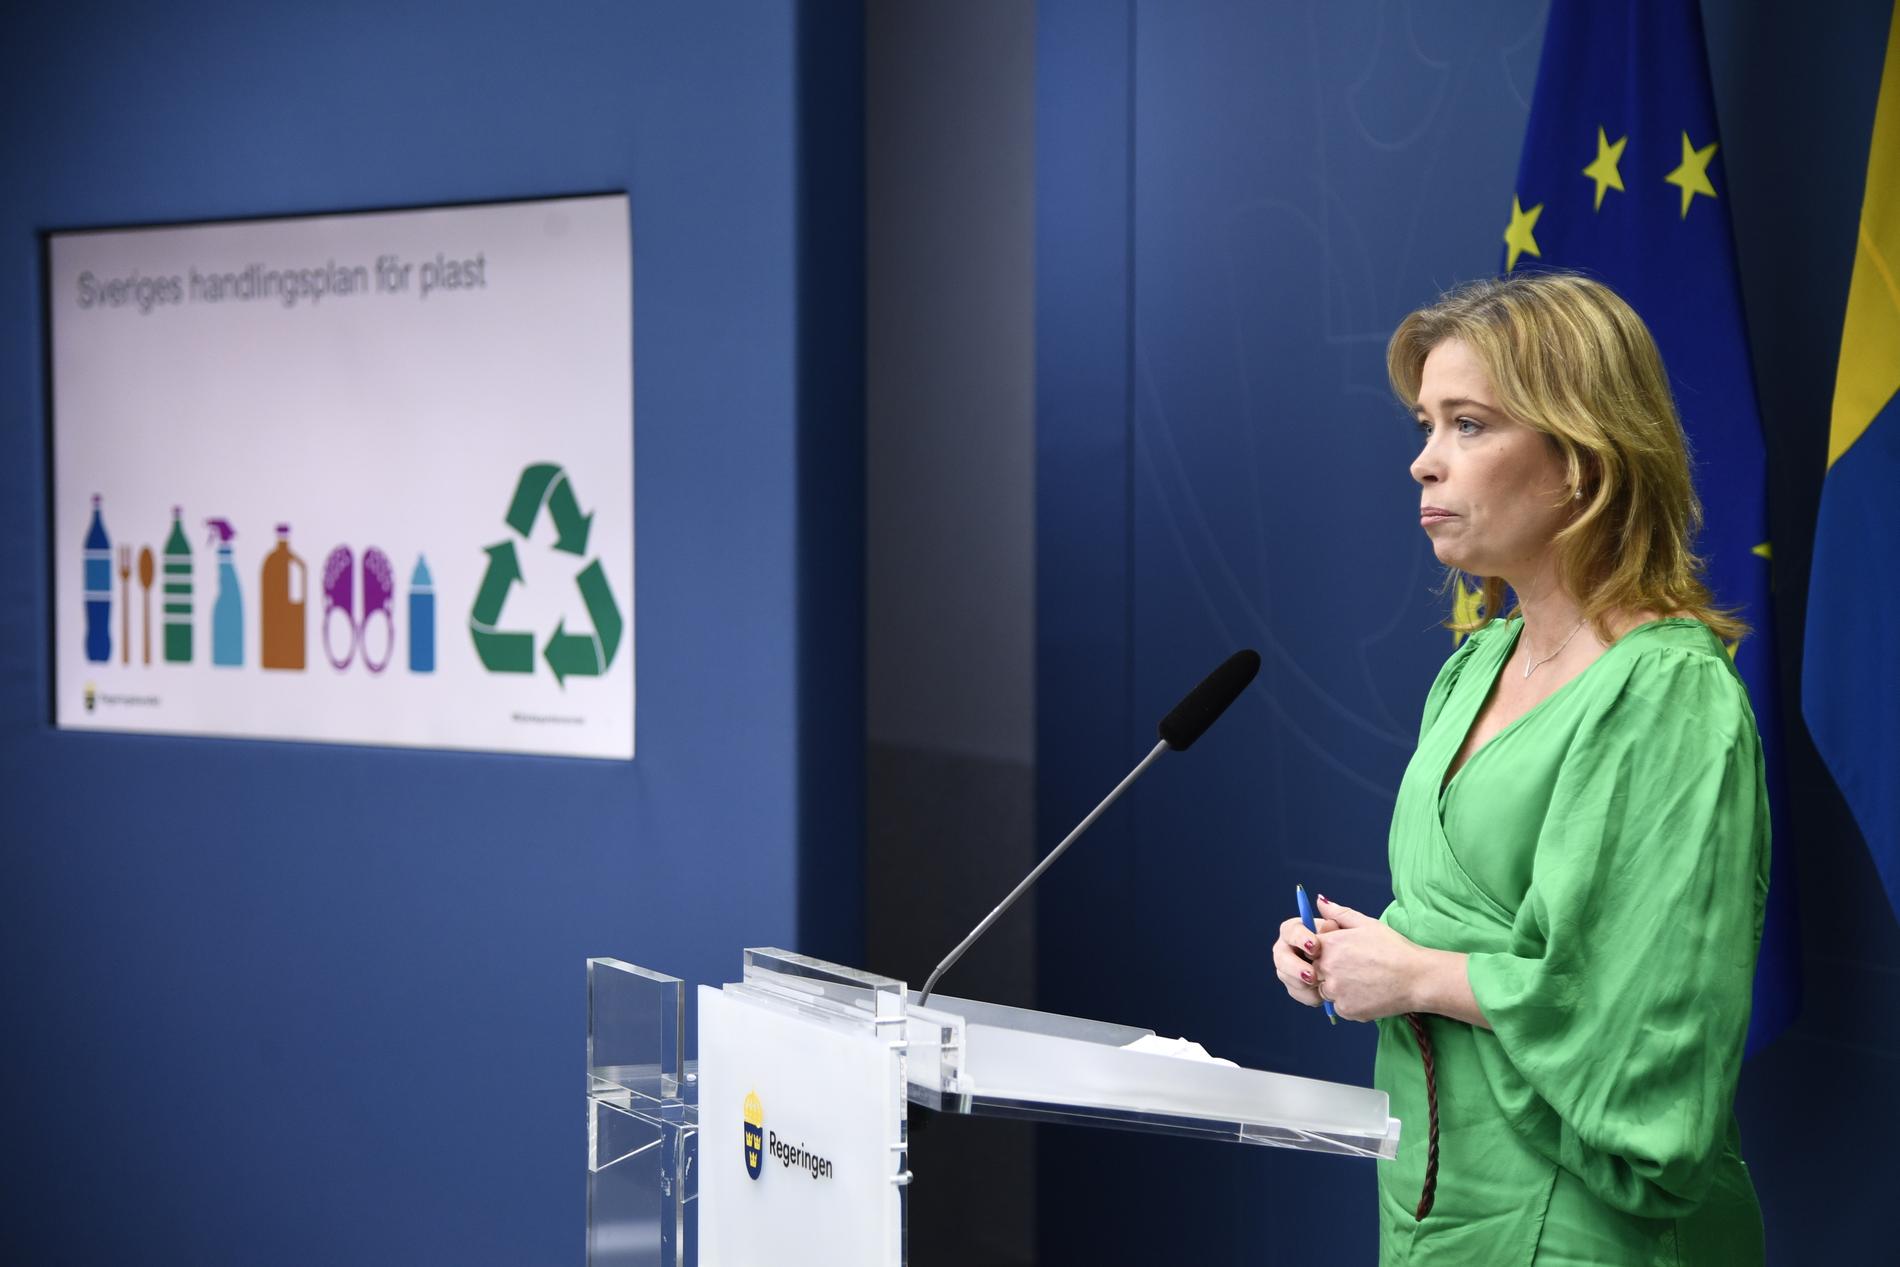 Klimat- och miljö­minister Annika Strandhäll (S) presenterar Sveriges handlingsplan för plast vid en pressträff i Rosenbad.